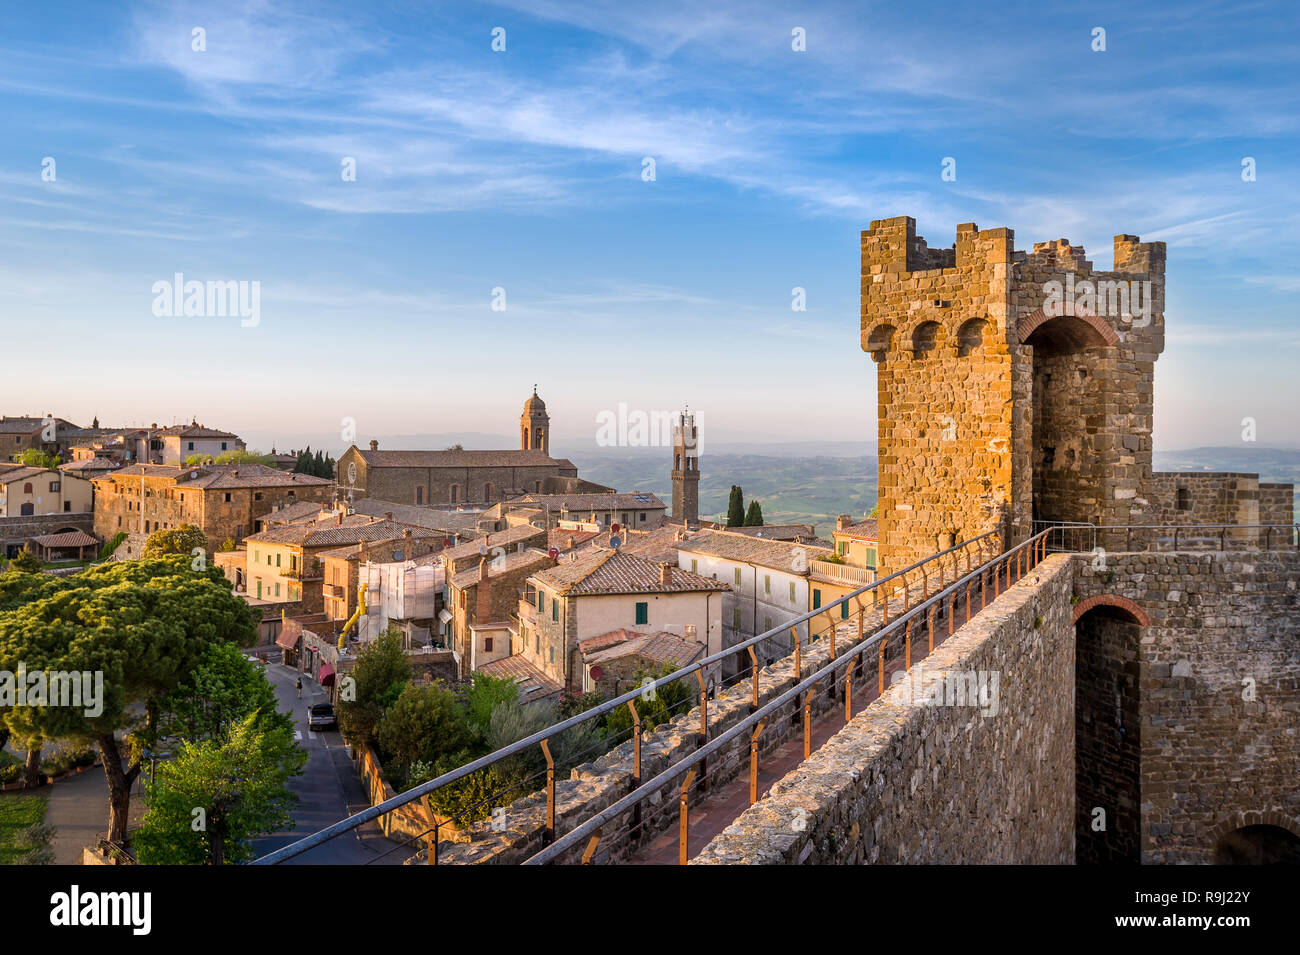 Fortezza Medievale parete vista dalla torre. Montalcino, Regione Toscana, Italia. Foto Stock